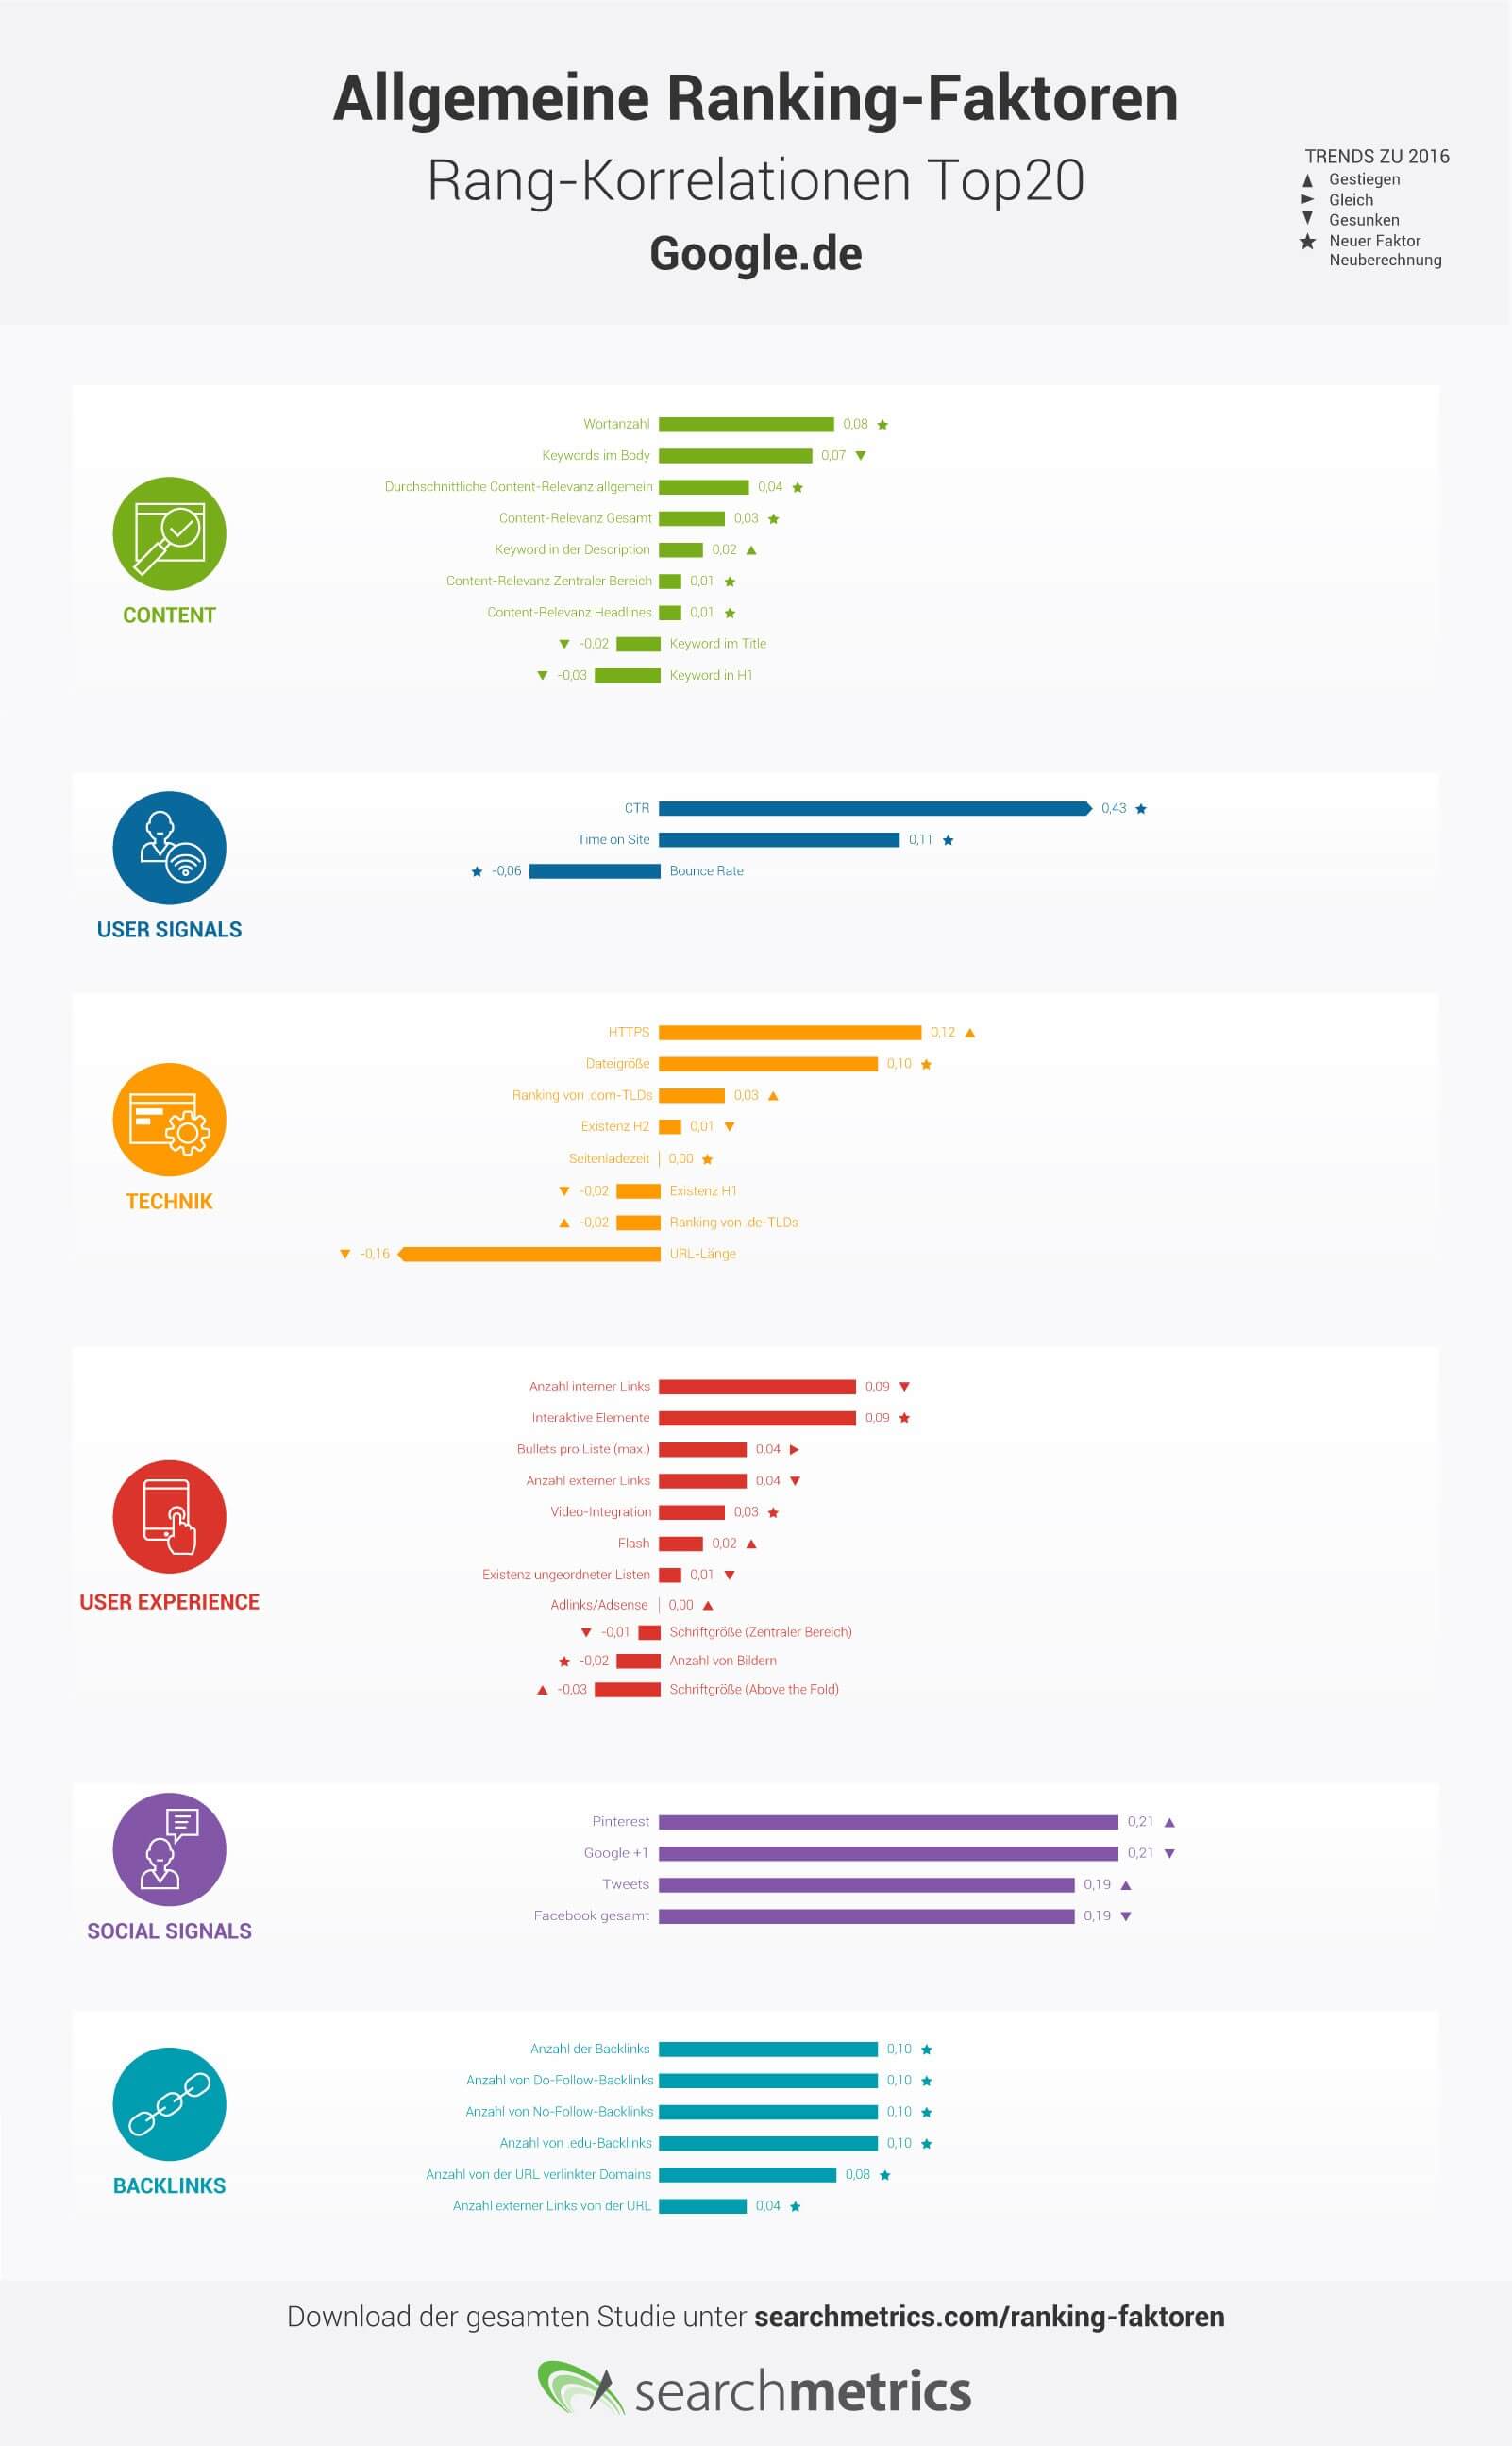 Grafik: Allgemeine Ranking-Faktoren-Rang-Korrelationen für die Top 20 bei Google.de